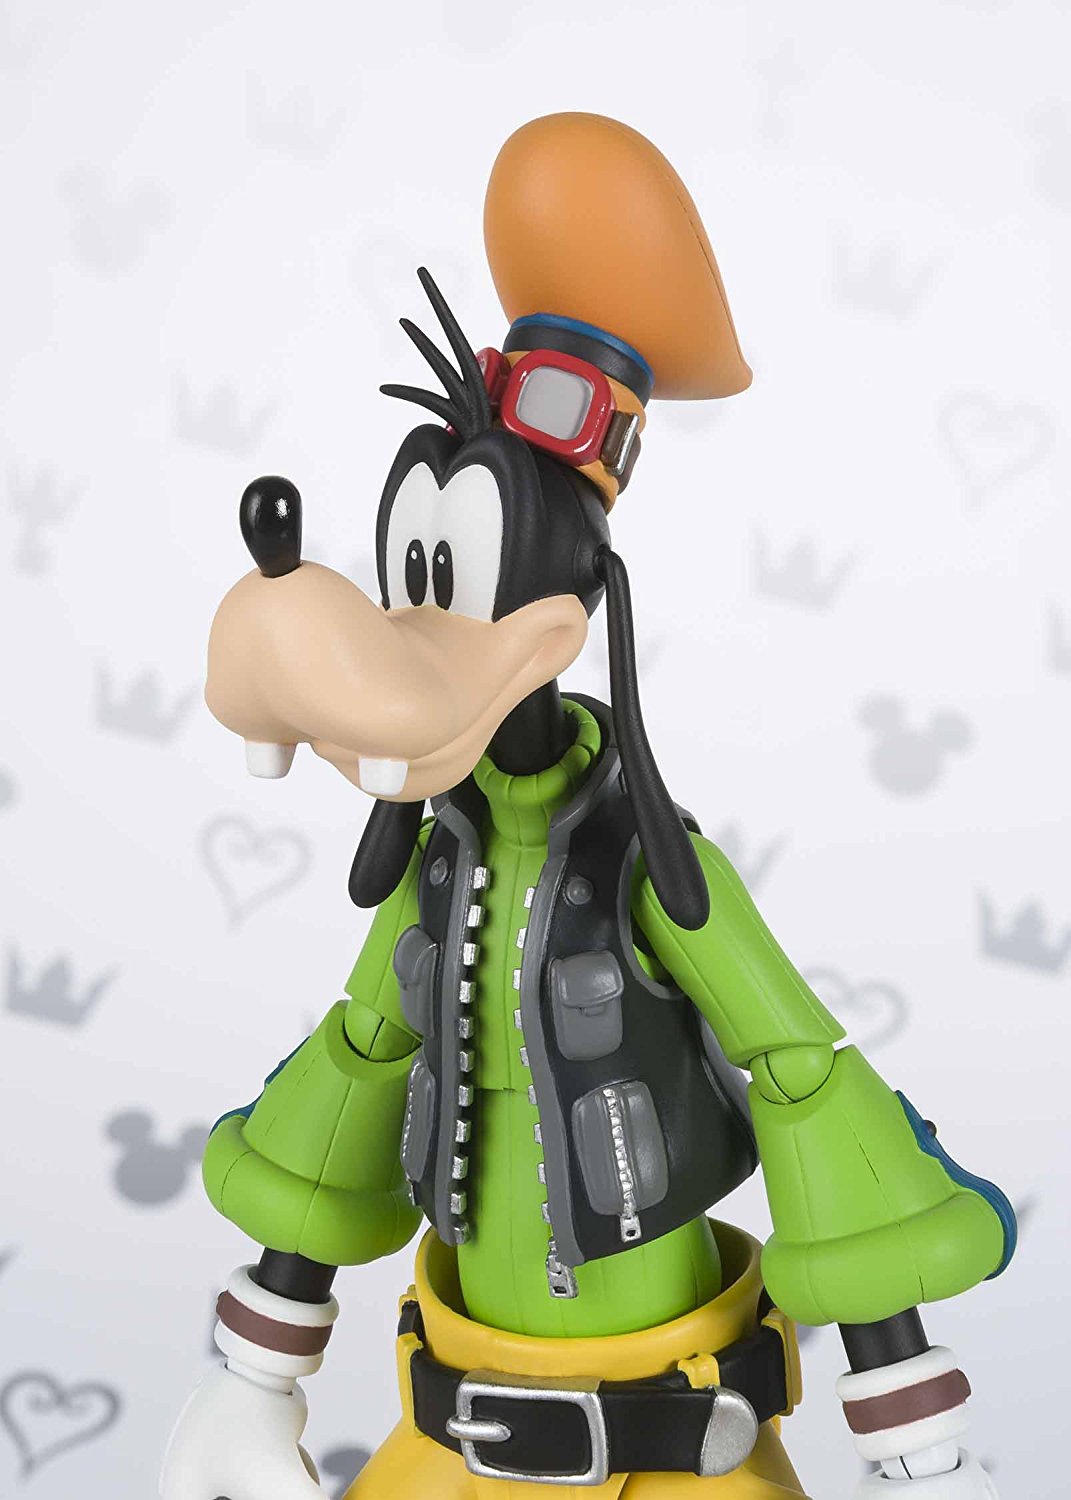 S.H. Figuarts - Kingdom Hearts II - Goofy